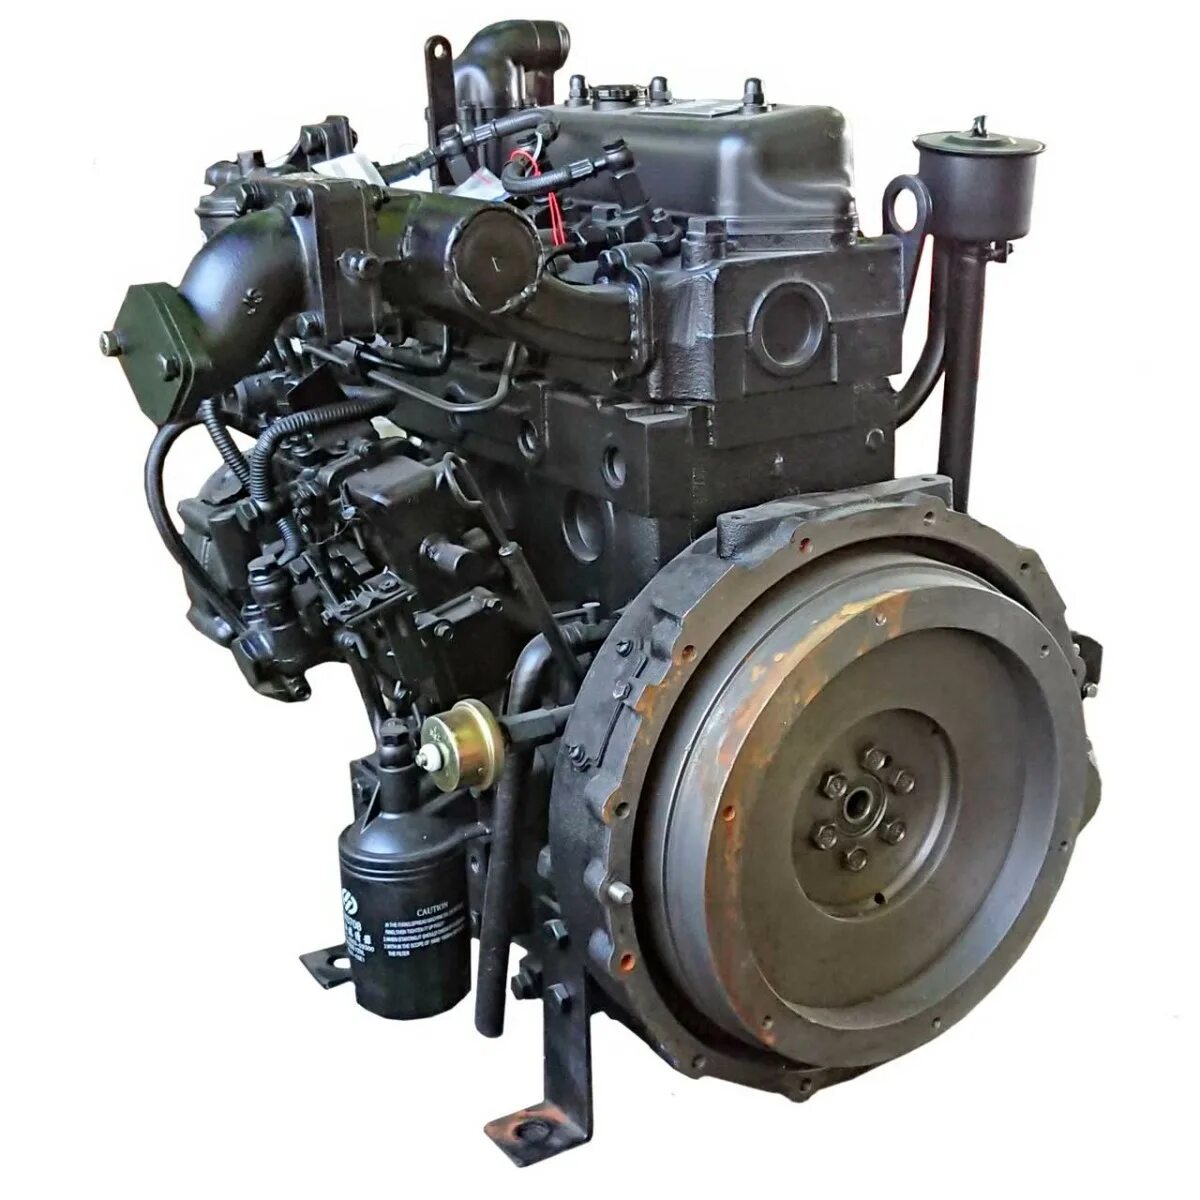 Отзывы дизельный мотор. Дизельный двигатель Yangdong yd490d. Двигатель Yangdong yd4ezld. Дизельный двигатель Yangdong yd385d запчасти. Двигатель дизельный r195ndl (15л.с.).